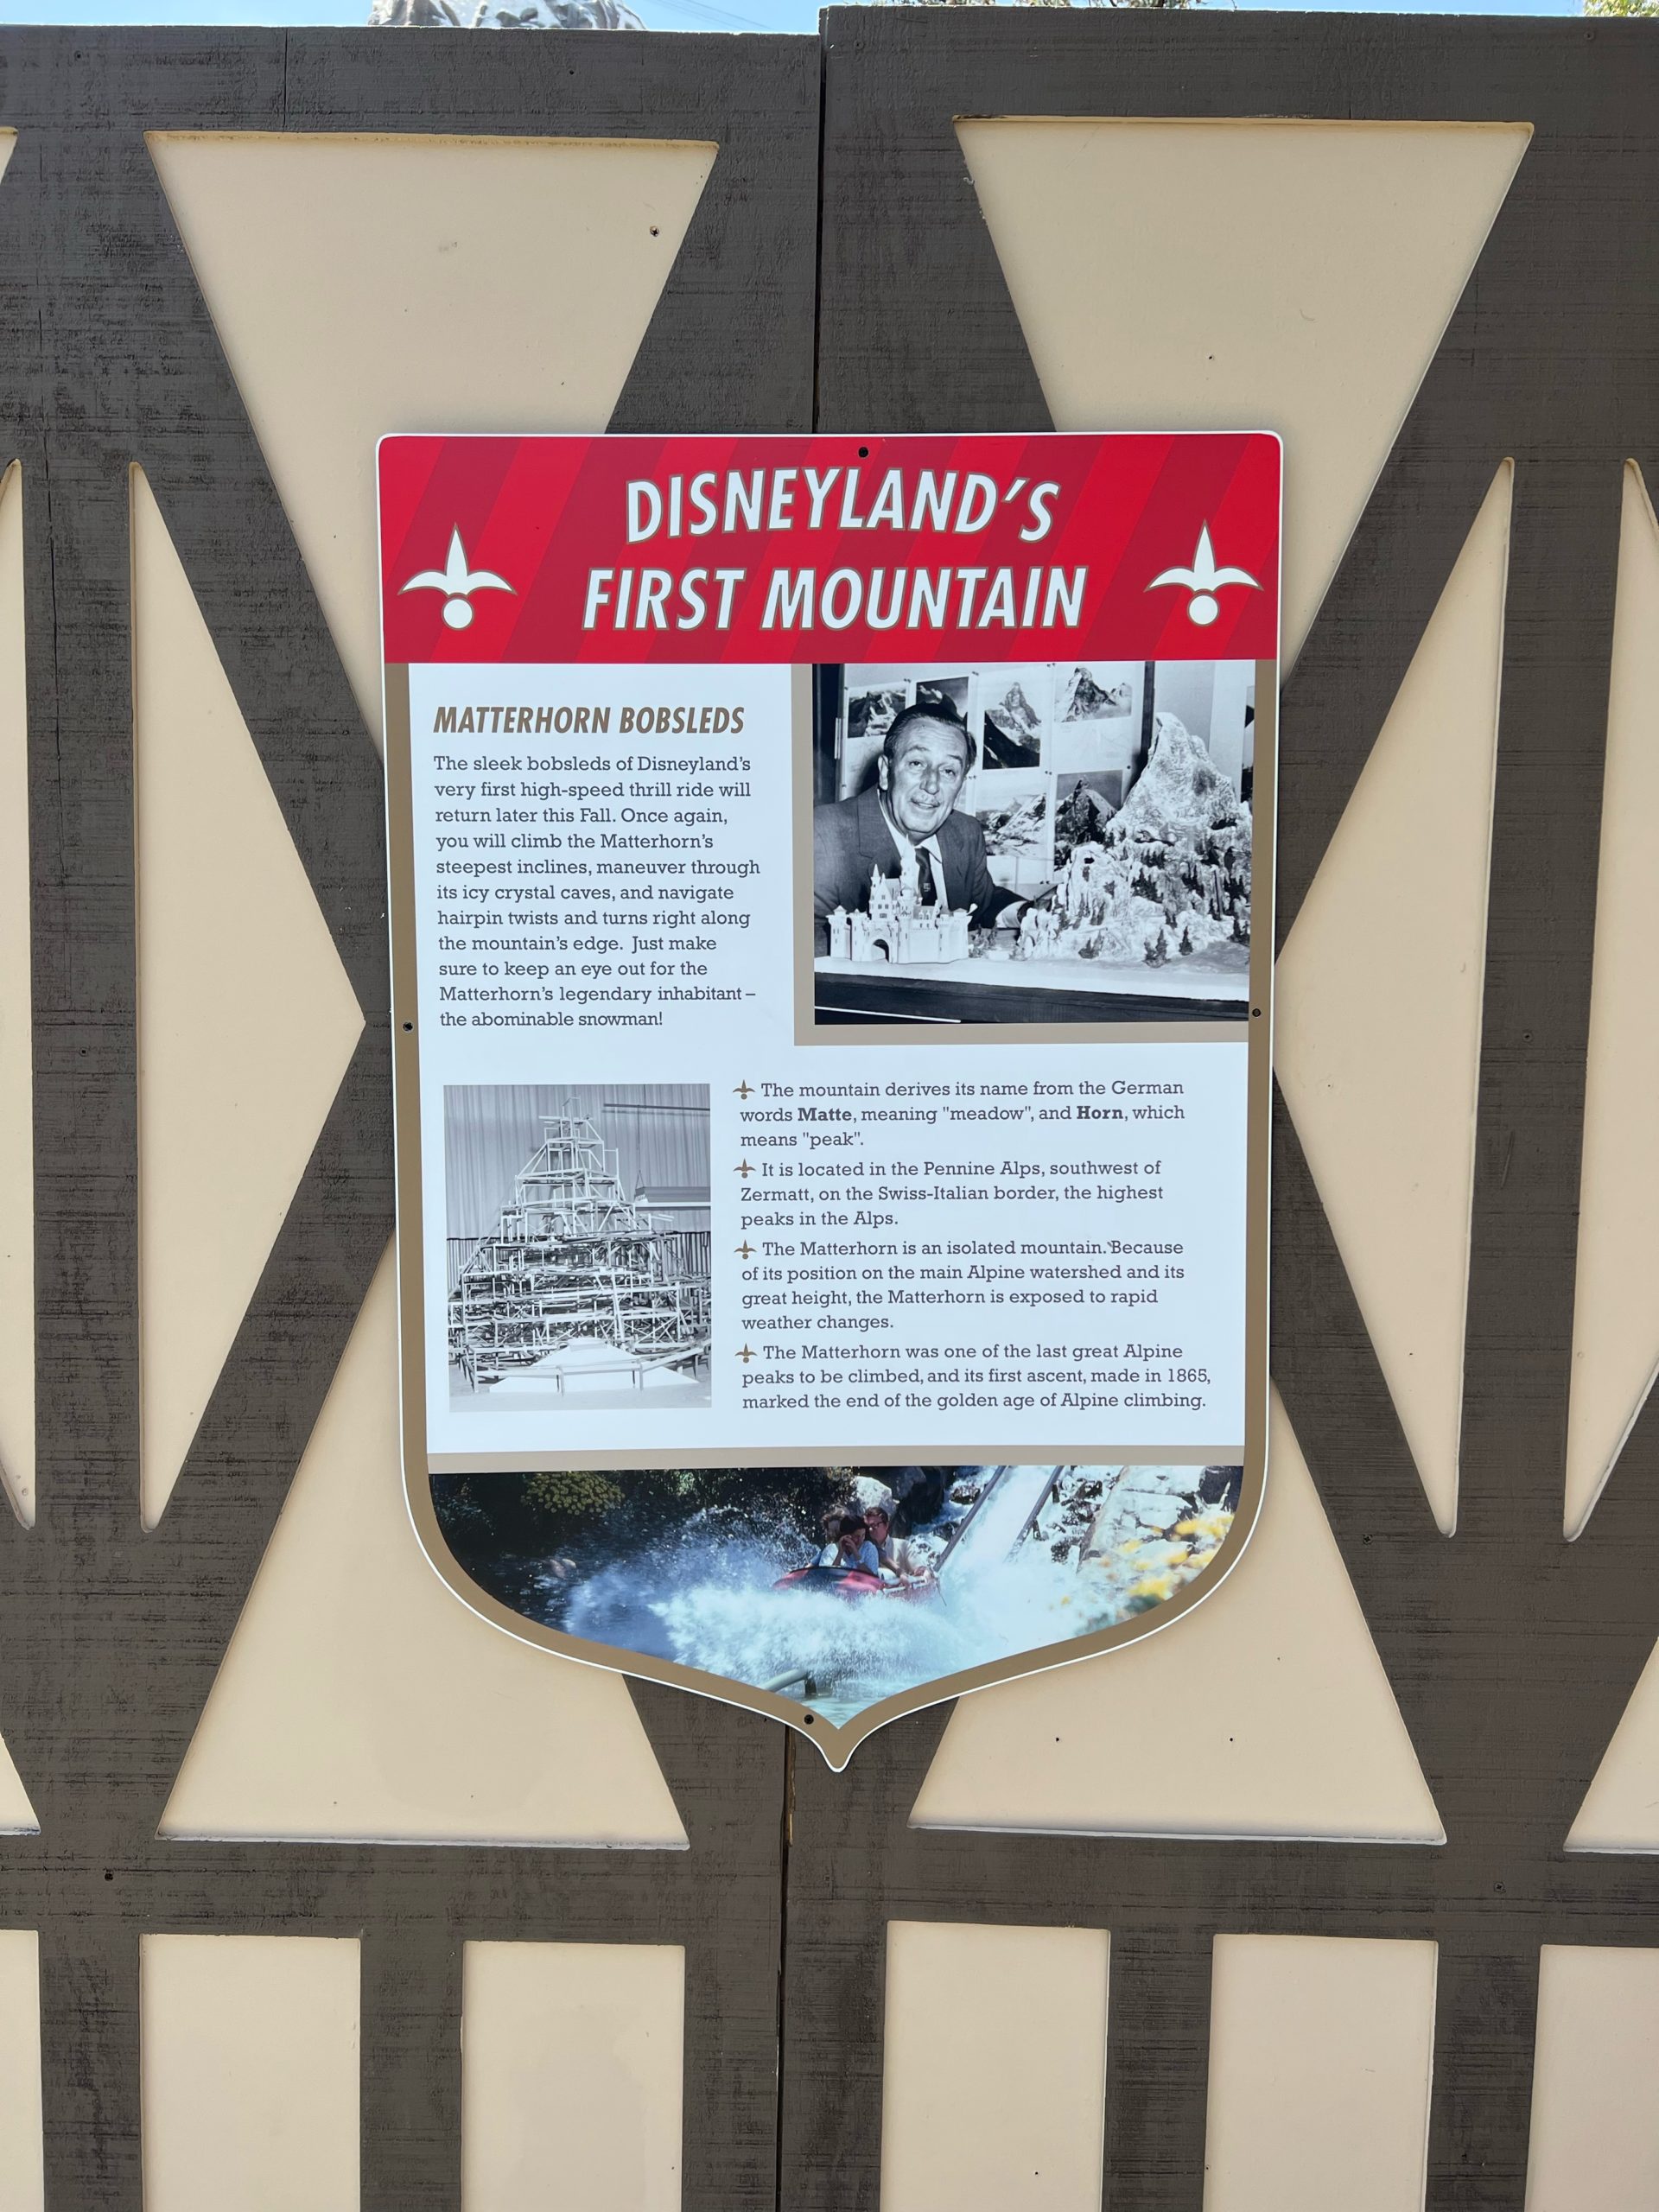 Disneyland's first mountain Matterhorn